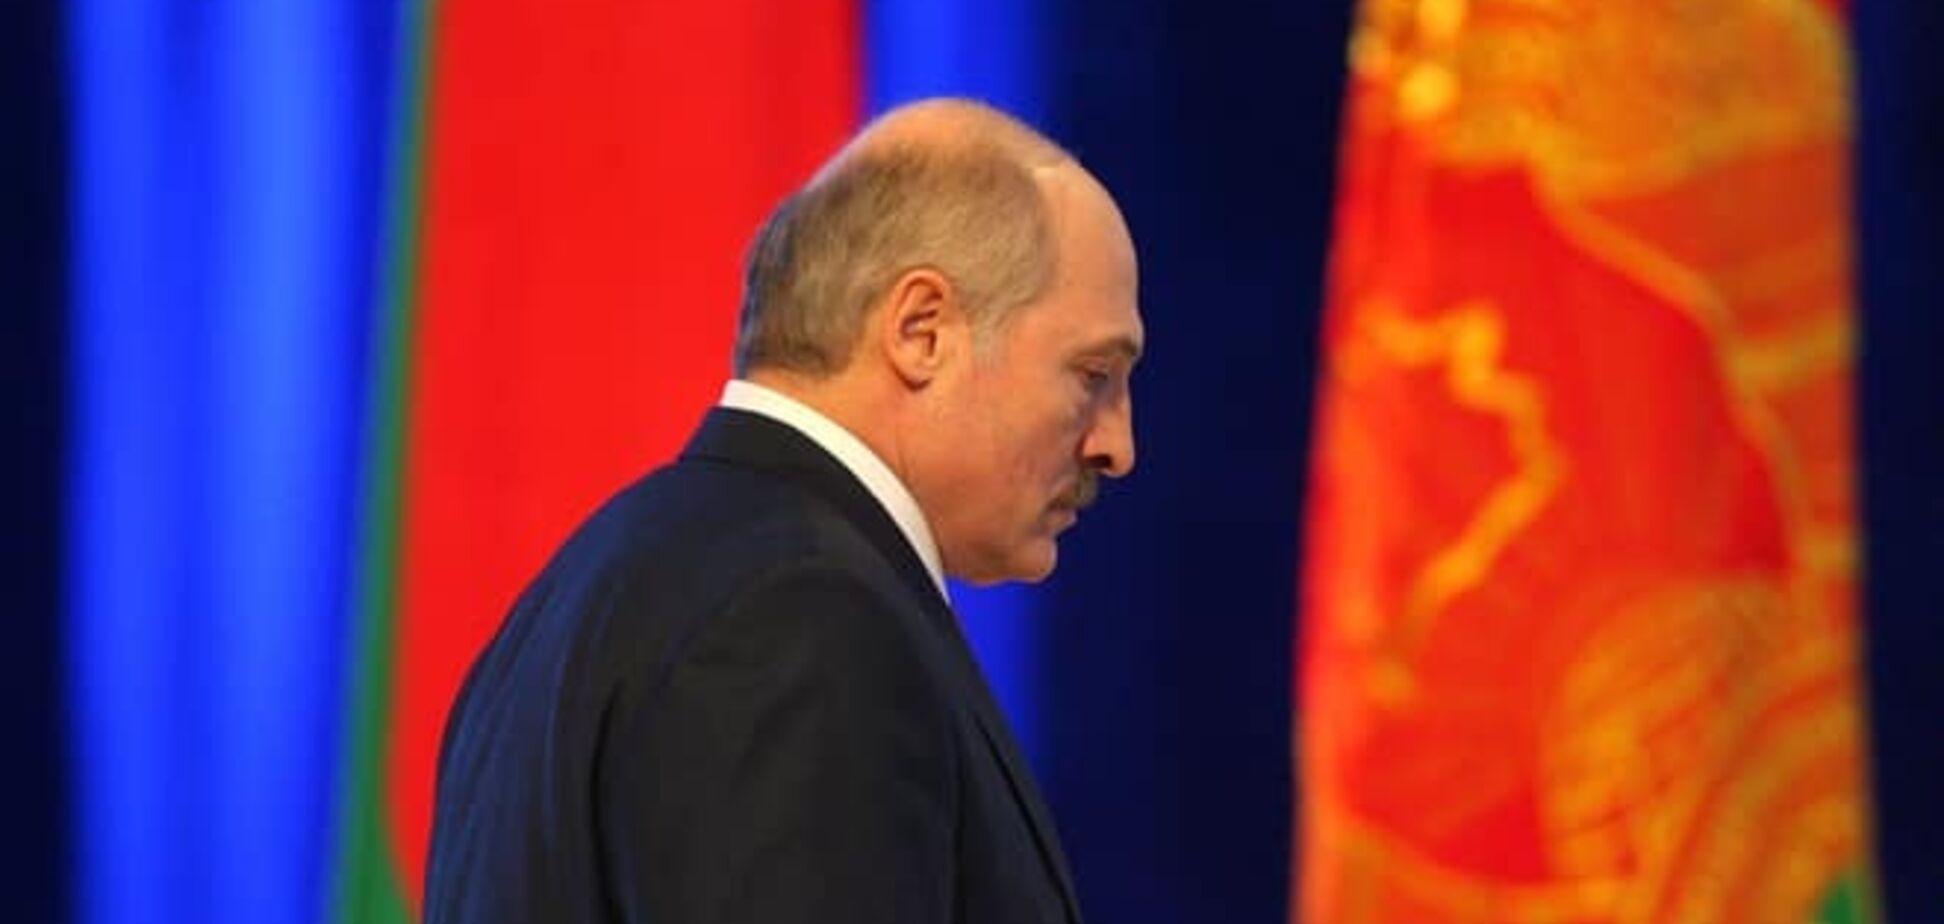 За конфликтом в Украине стоят сильные мира сего - Лукашенко